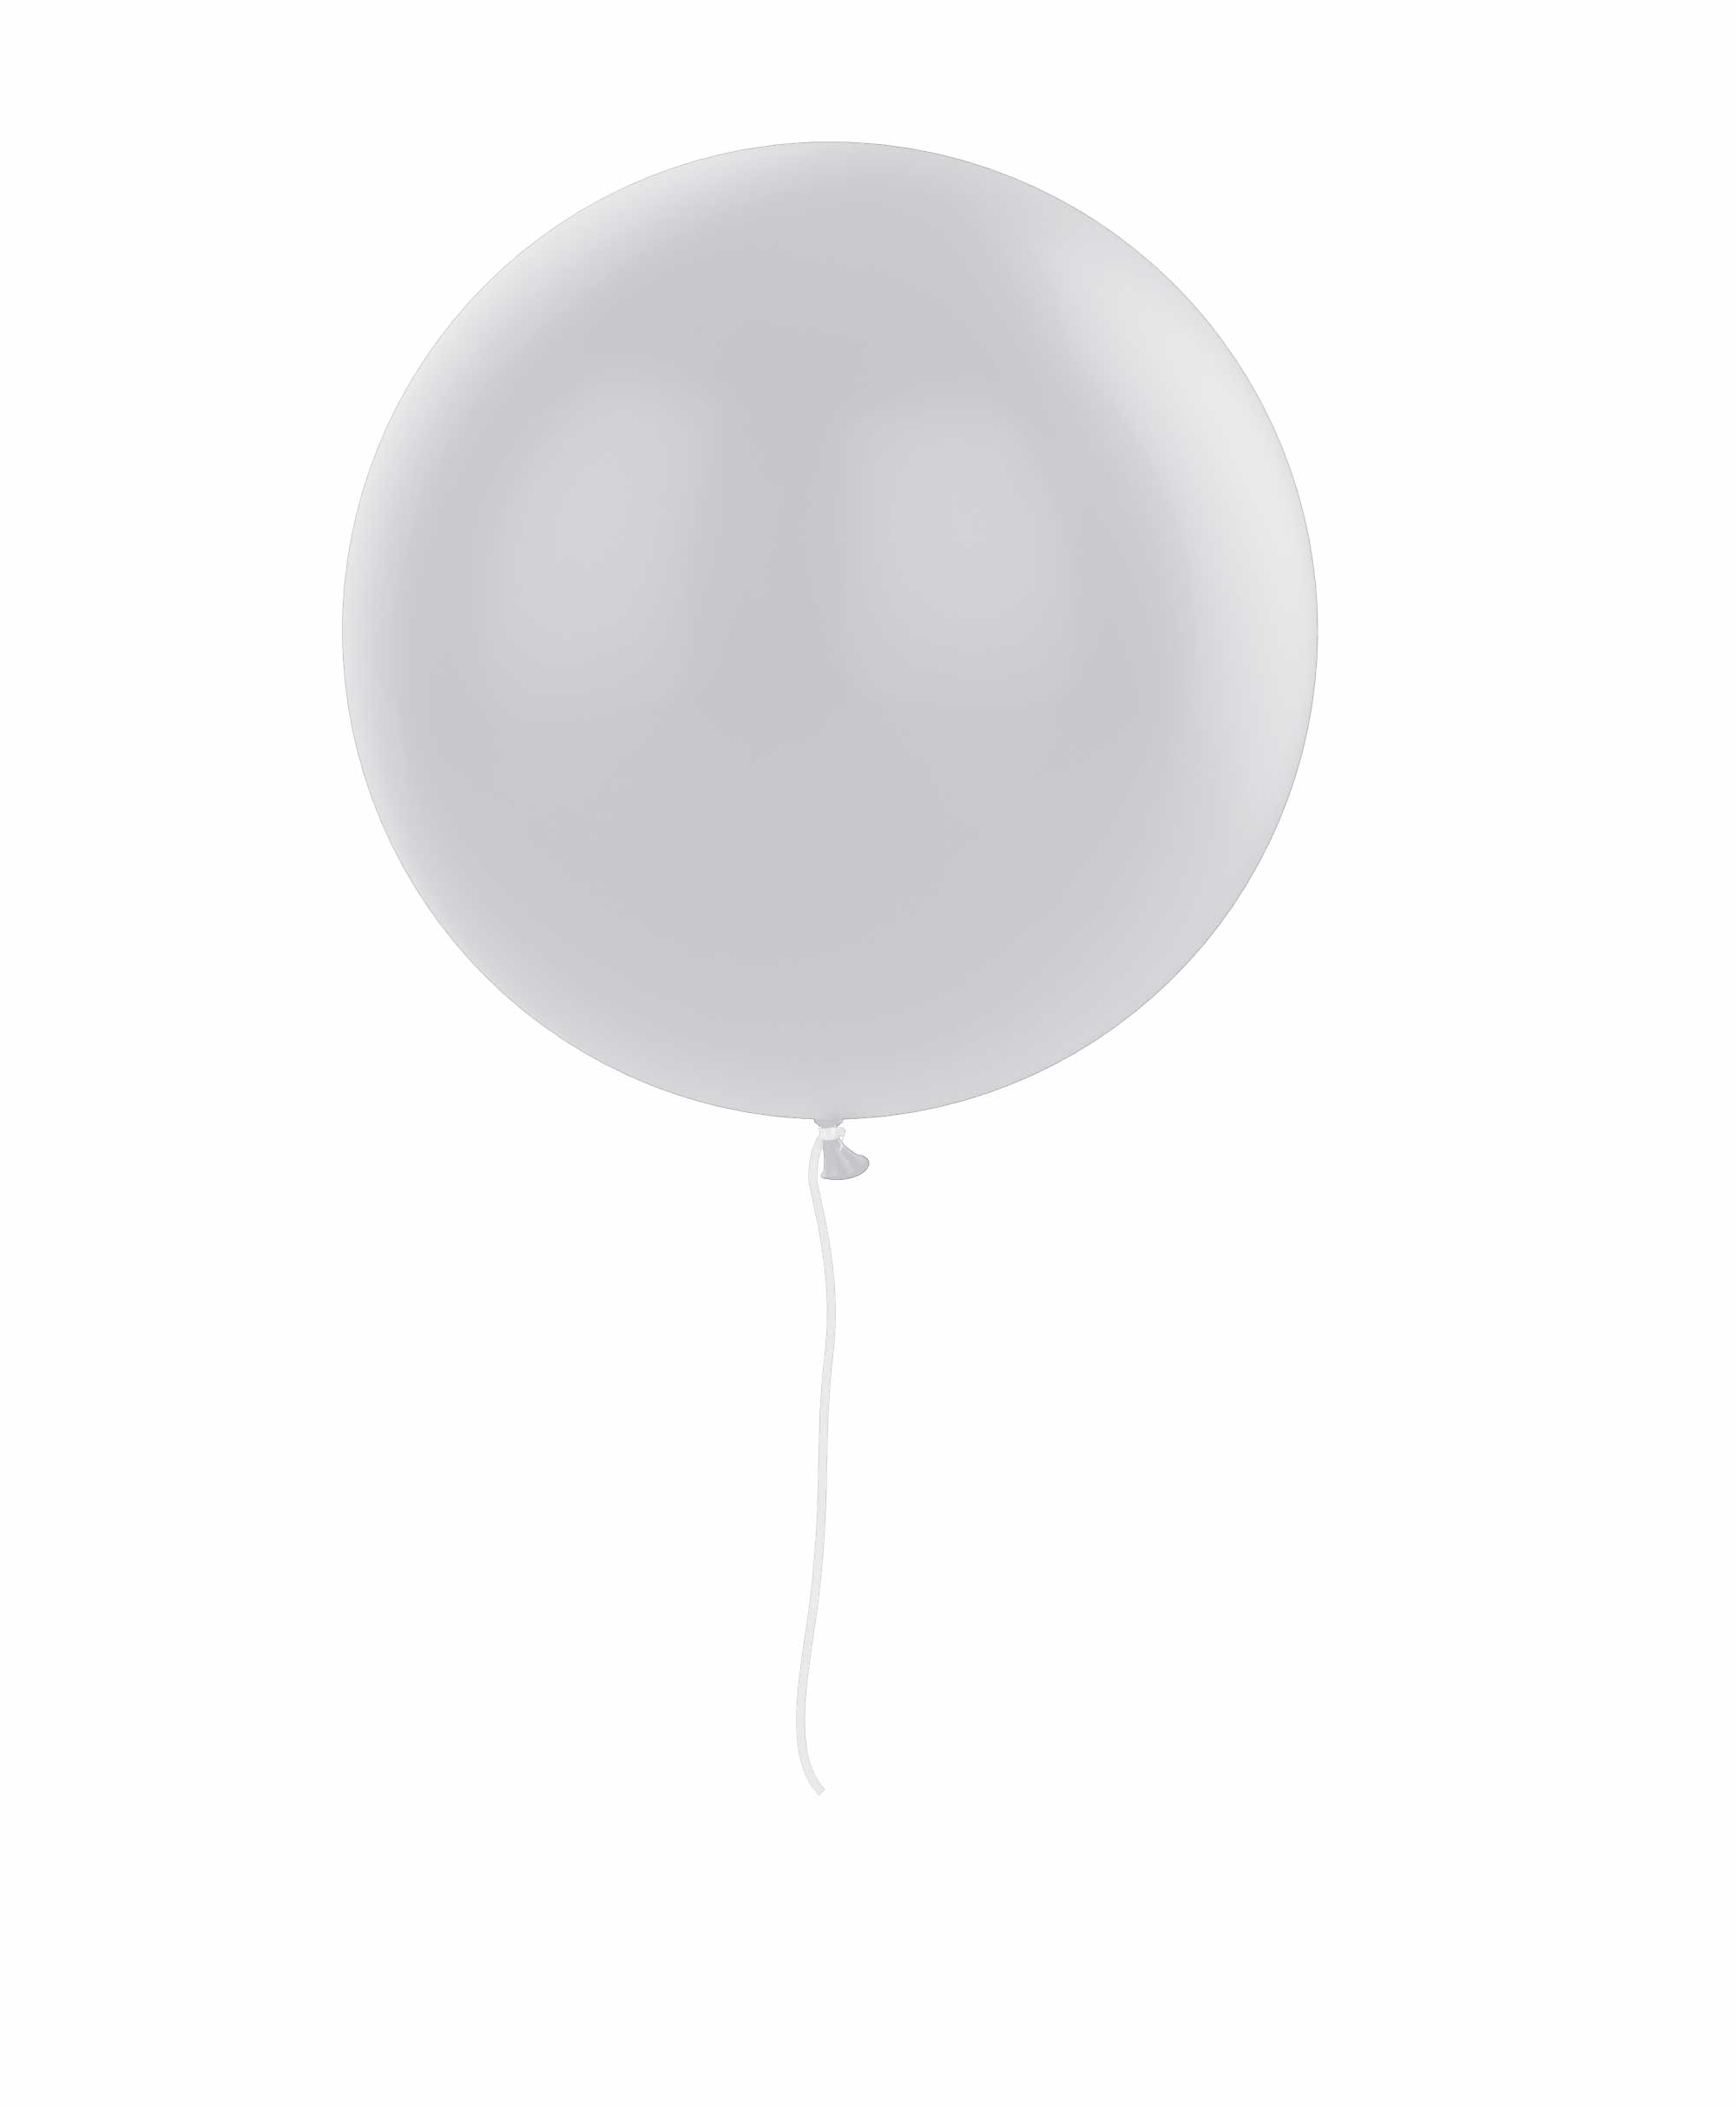 Grey balloon 36" - Elephant Theme